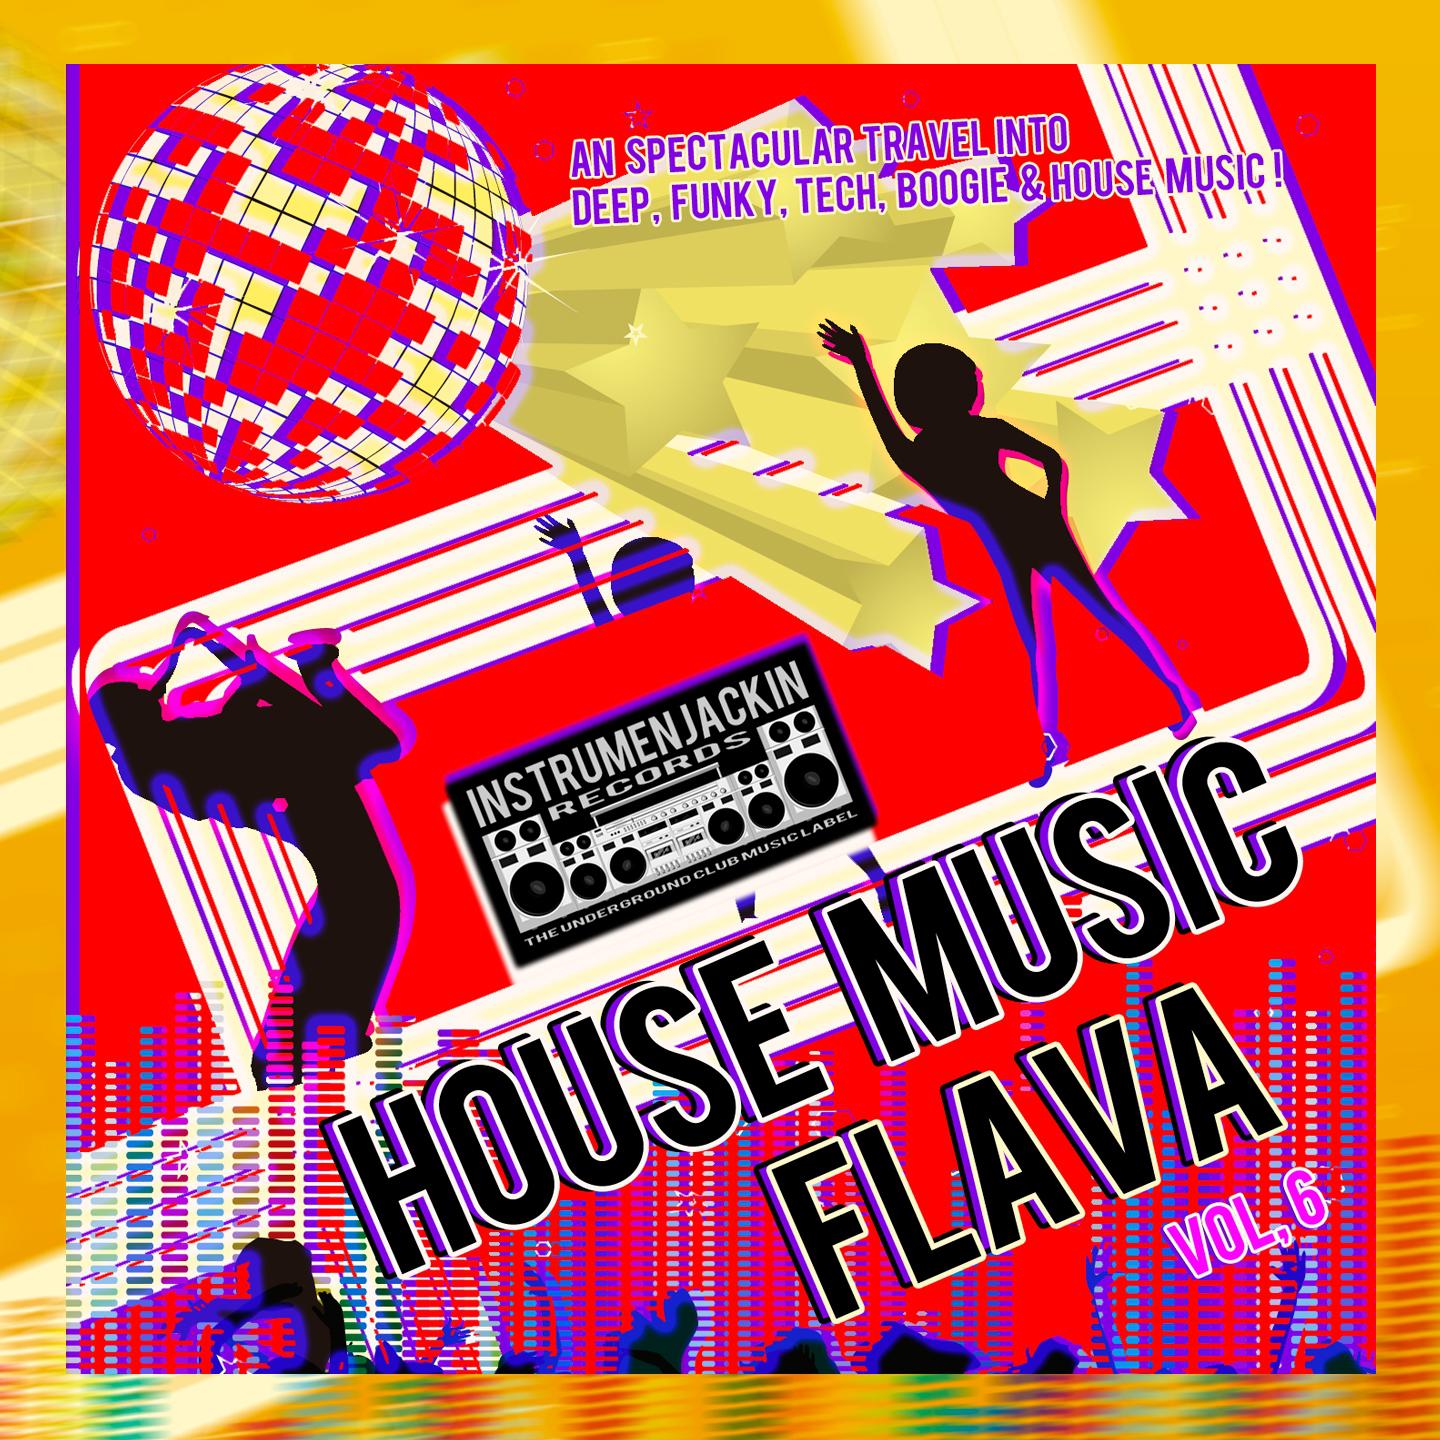 House Music Flava, Vol. 6